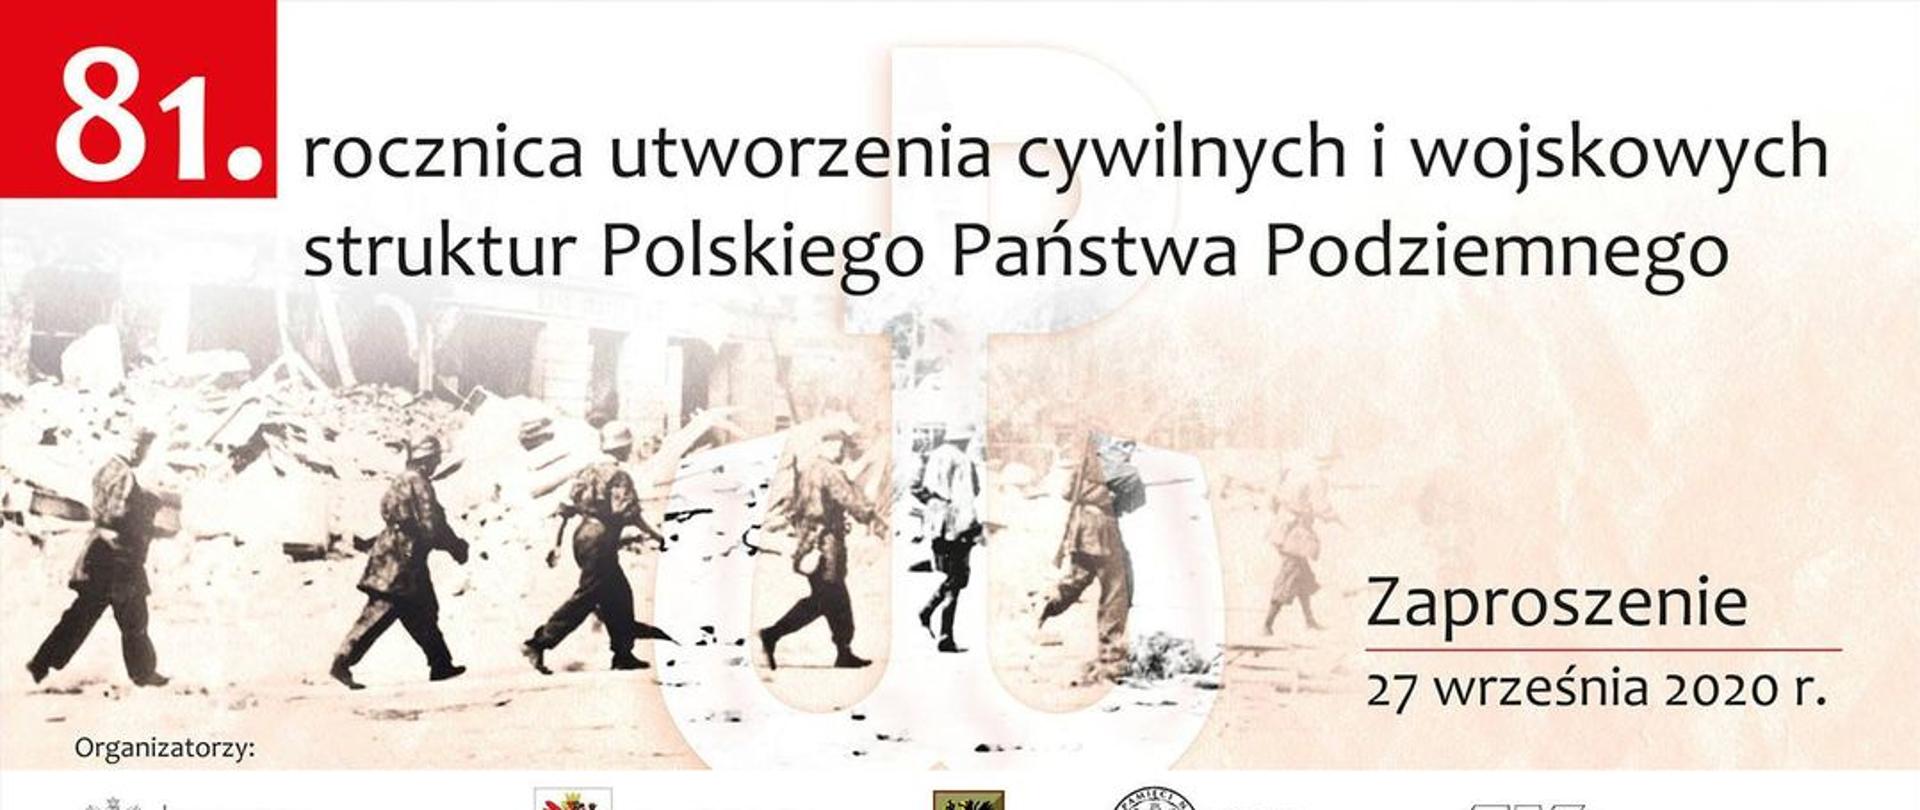 Plansza z napisem: 81. rocznica utworzenia cywilnych i wojskowych struktur Polskiego Państwa Podziemnego